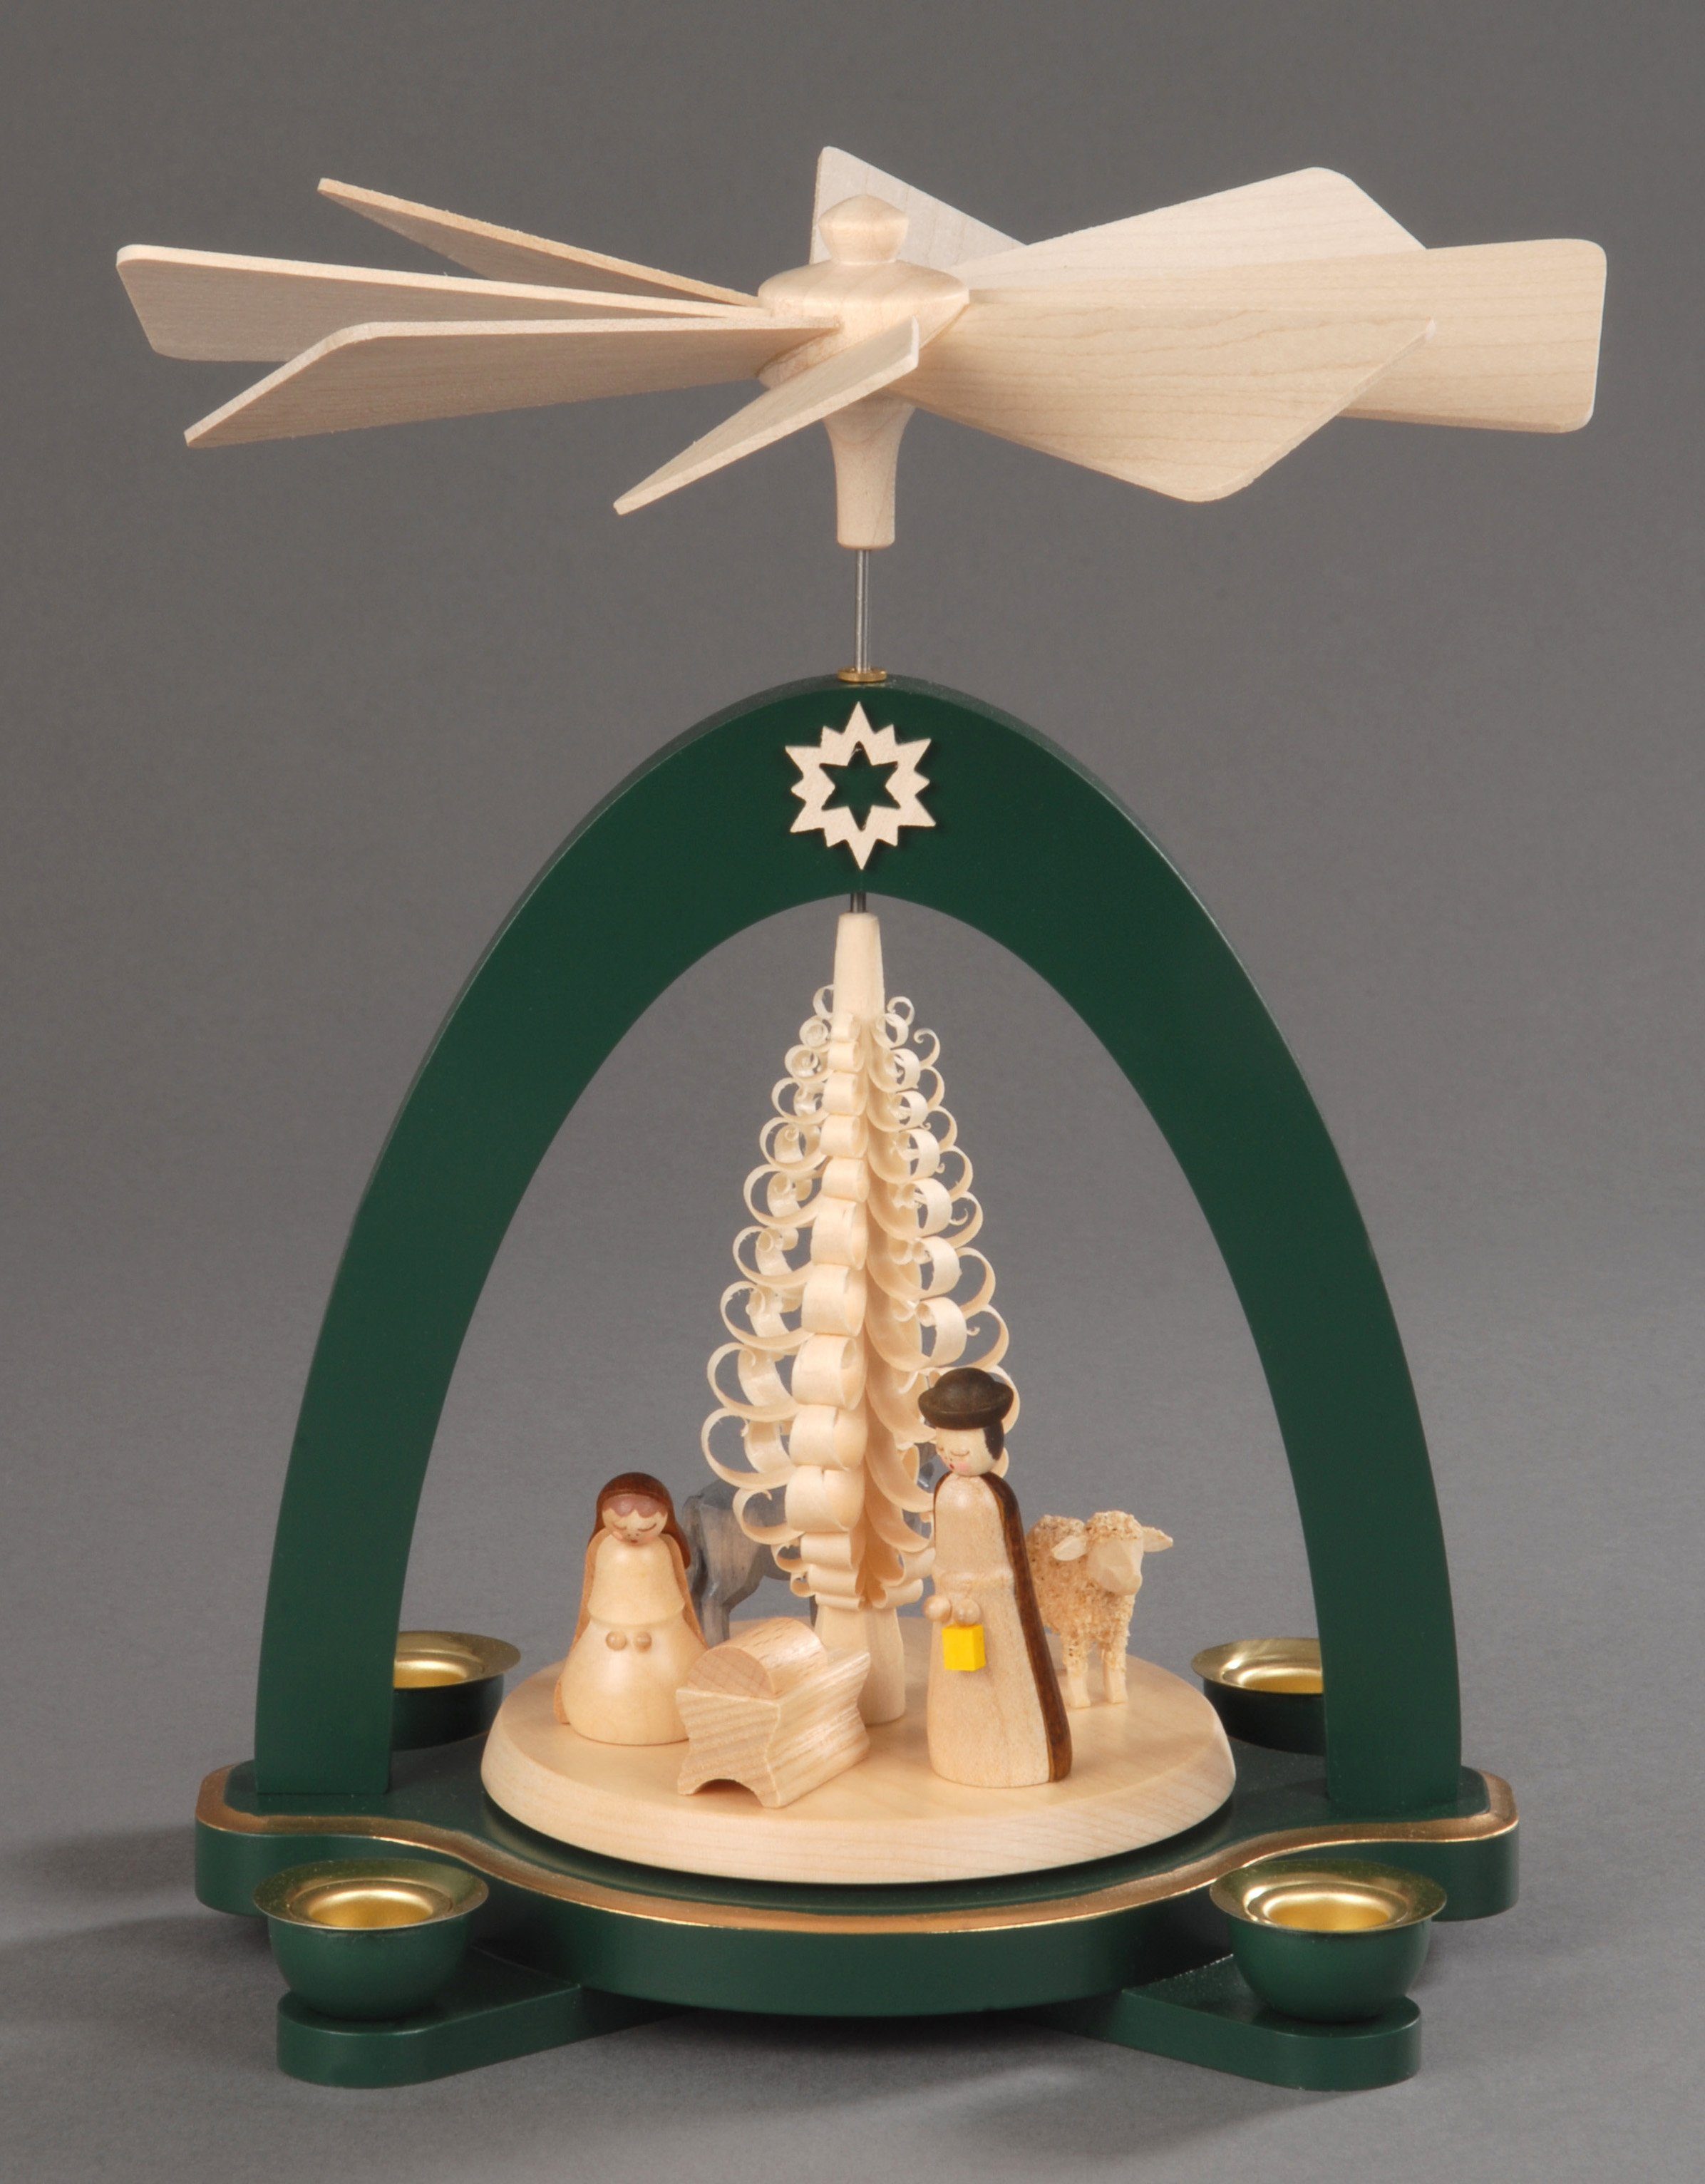 Albin Preissler Weihnachtspyramide Erzgebirge Christi aus Geburt dem mit Weihnachtsdeko, Spanbaum, Handwerkskunst